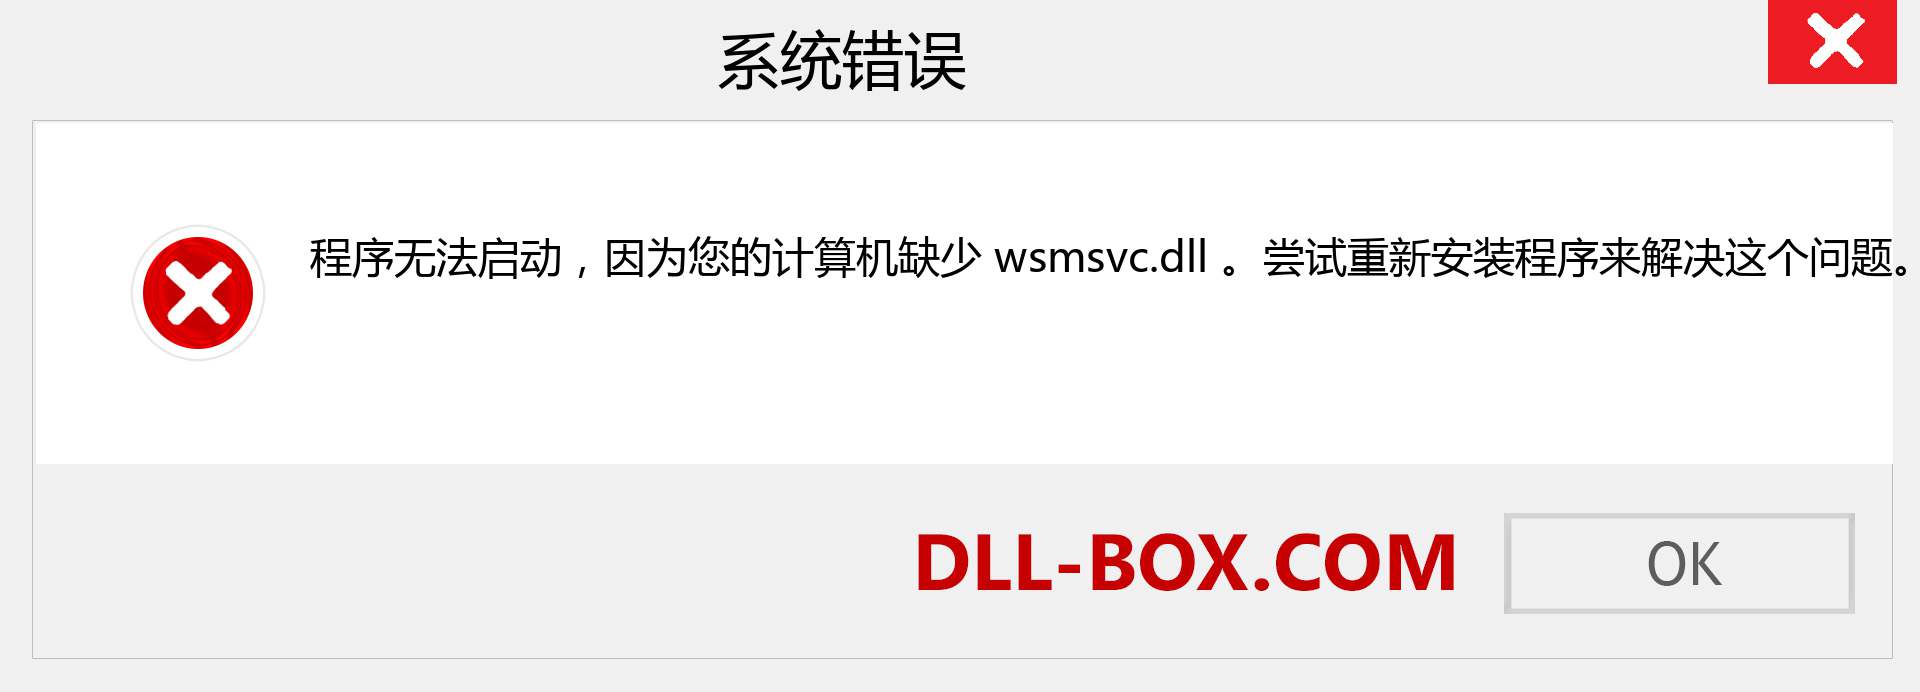 wsmsvc.dll 文件丢失？。 适用于 Windows 7、8、10 的下载 - 修复 Windows、照片、图像上的 wsmsvc dll 丢失错误